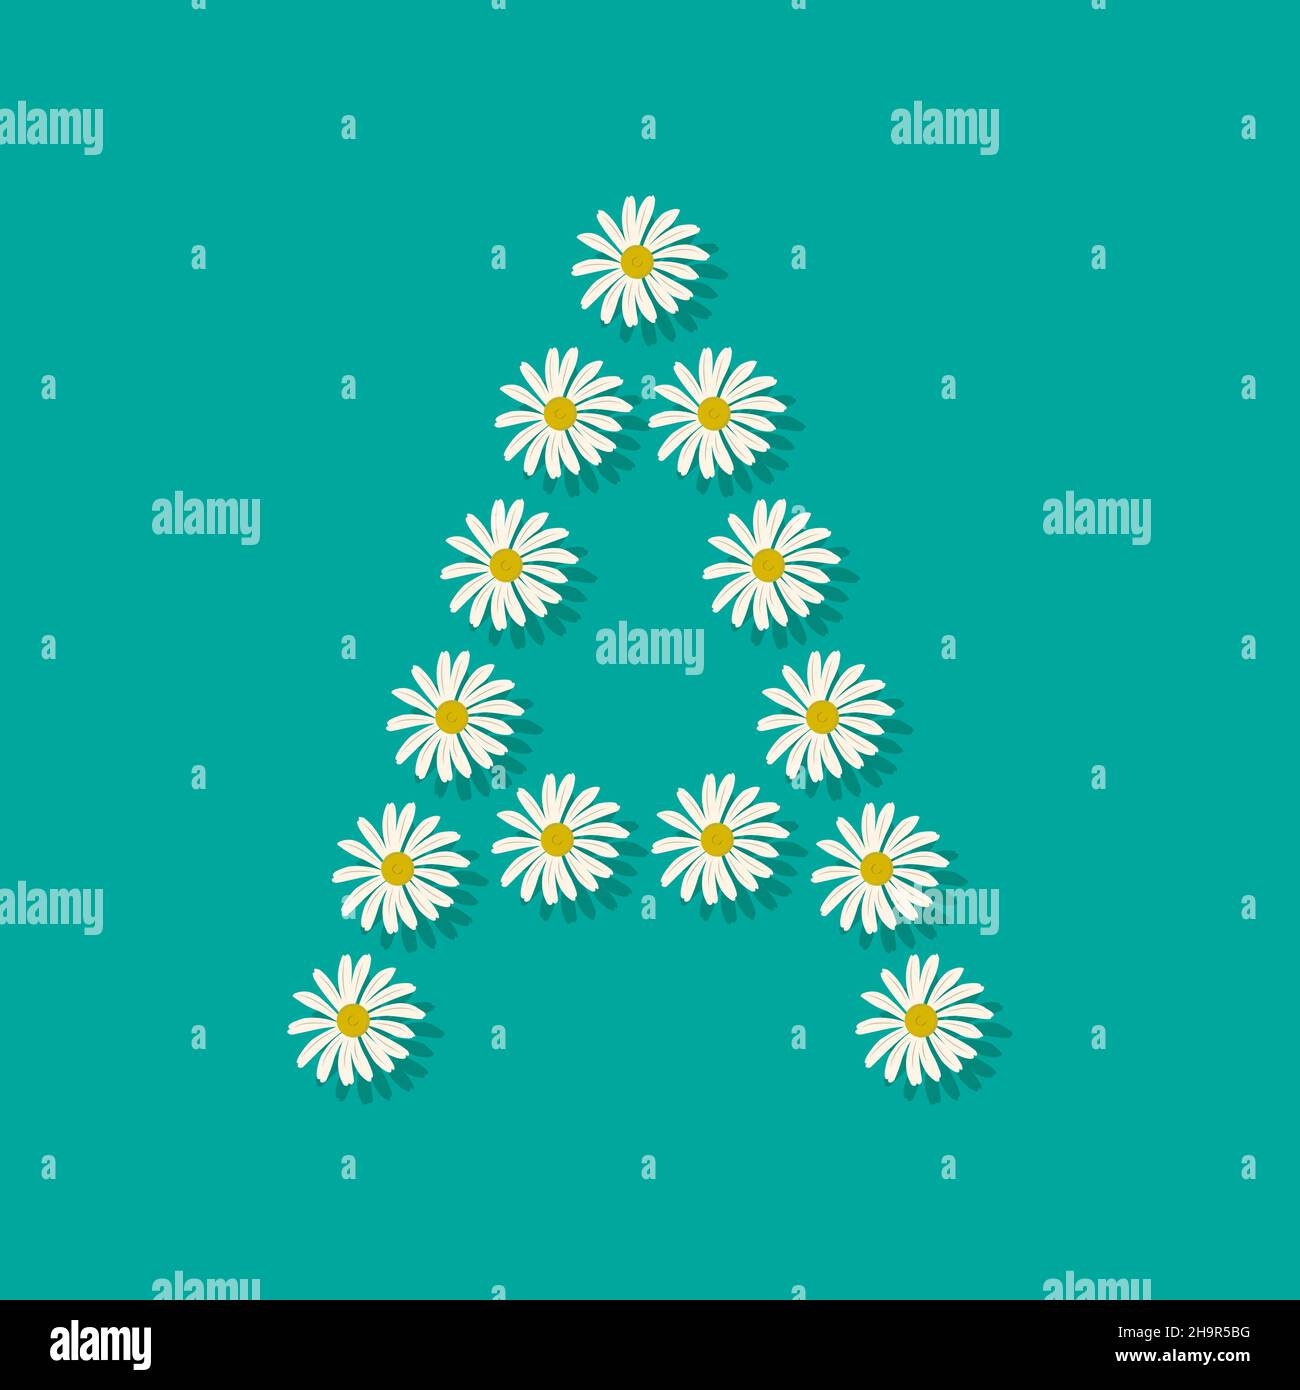 Lettre A de fleurs de camomille blanches.Police ou décoration festive pour les vacances de printemps ou d'été et le design.Illustration vectorielle plate Illustration de Vecteur